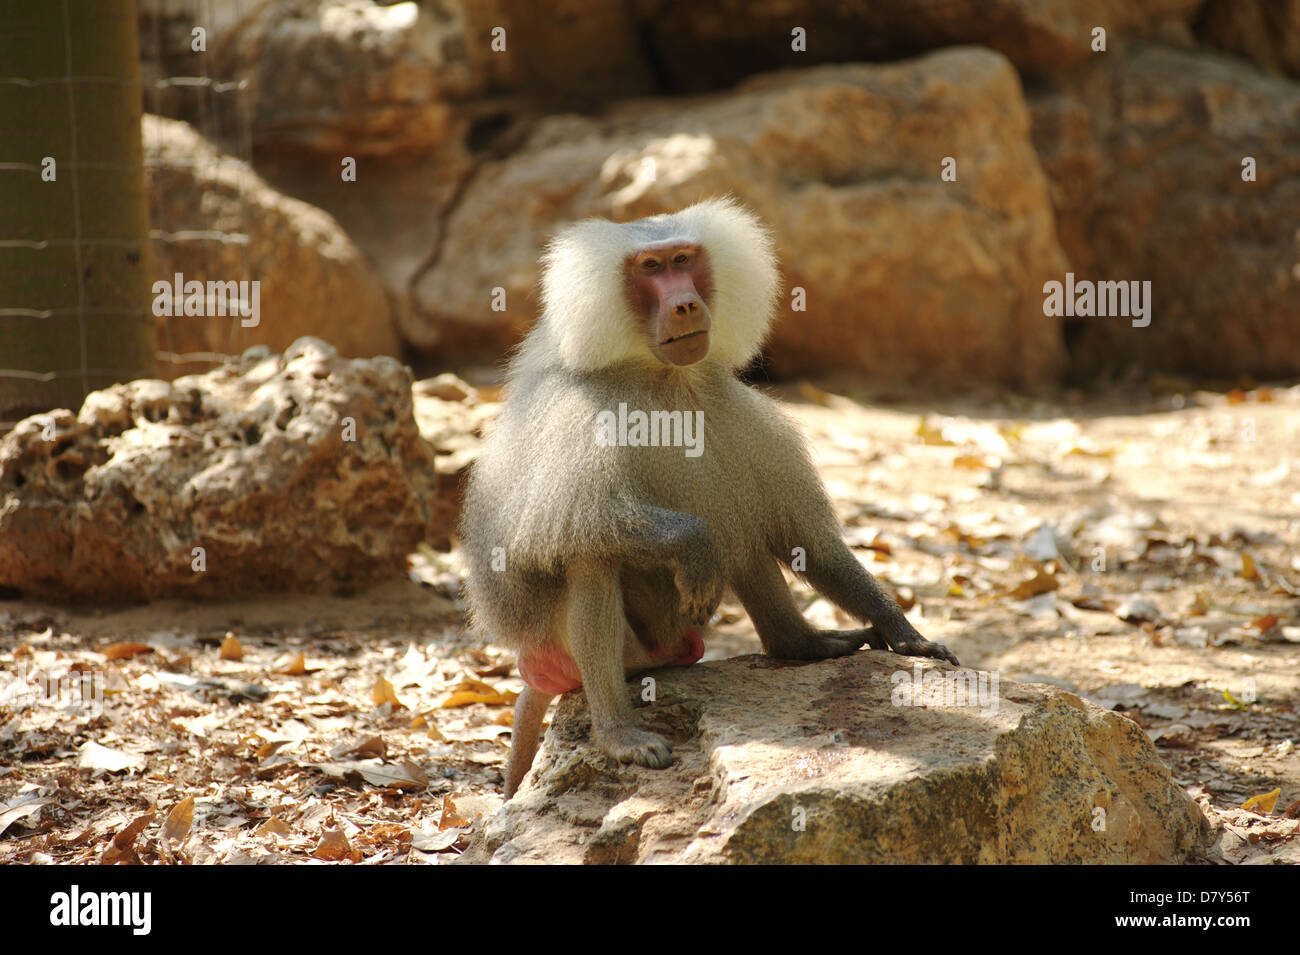 white monkey in zoo Stock Photo